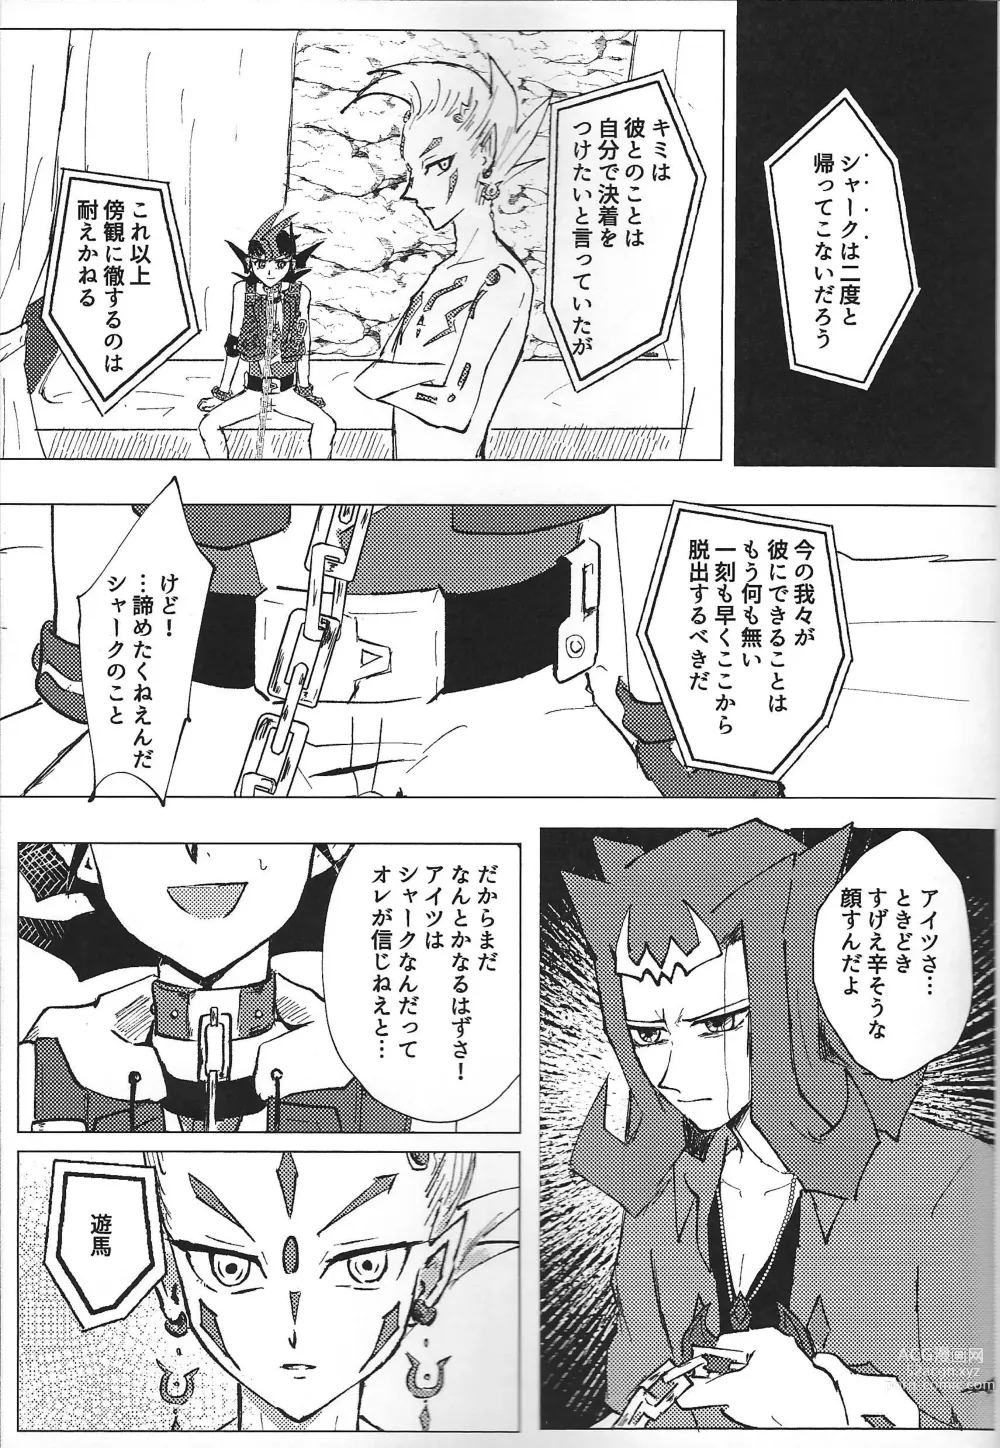 Page 11 of doujinshi ChaosPhantasma